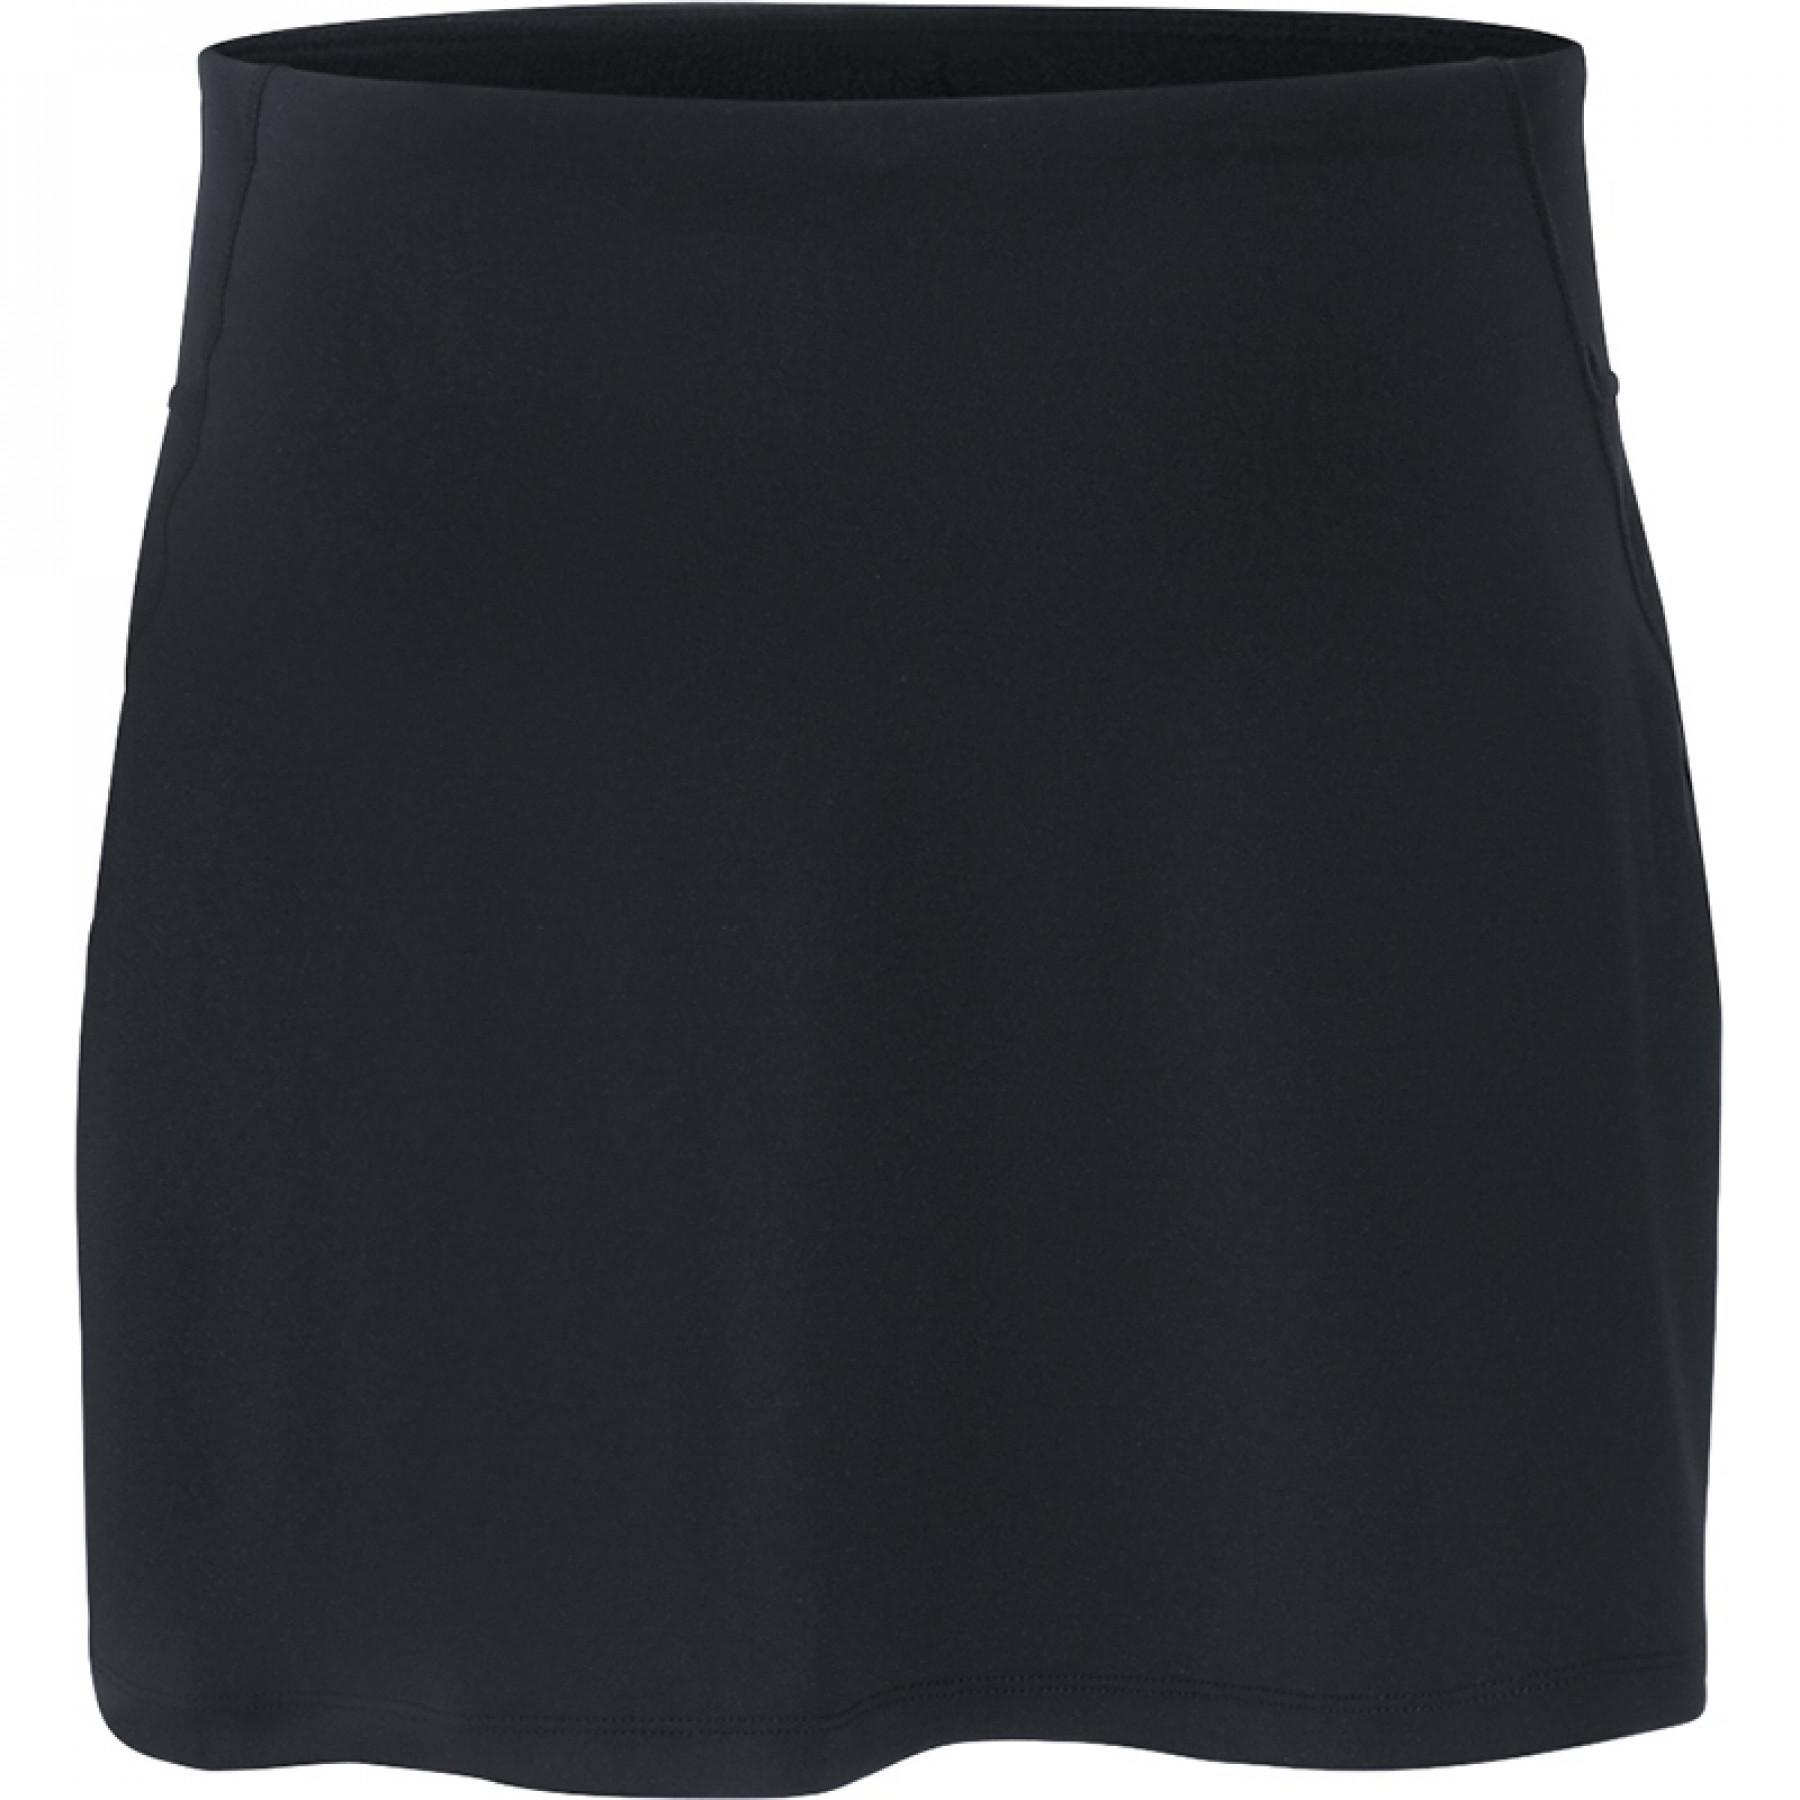 Women's skirt Jako Basic